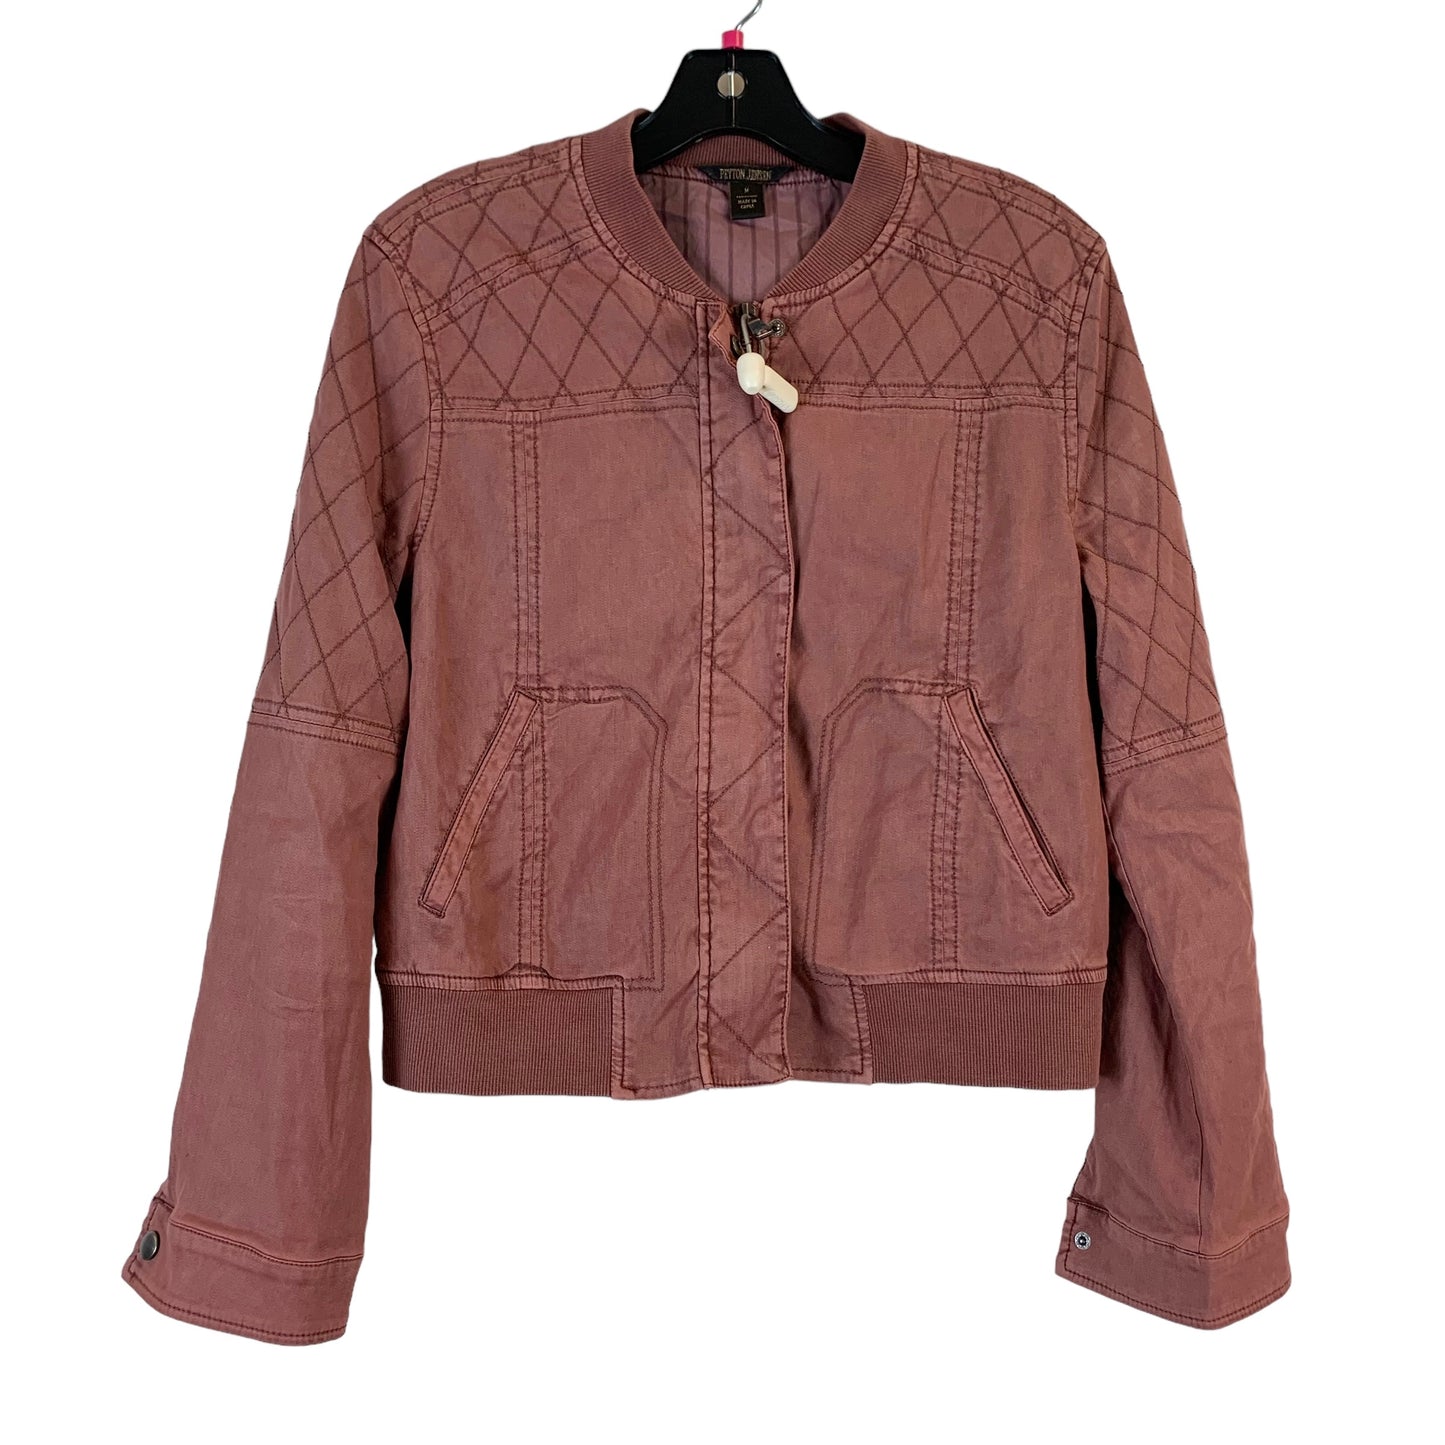 Jacket Other By Peyton Jensen  Size: M